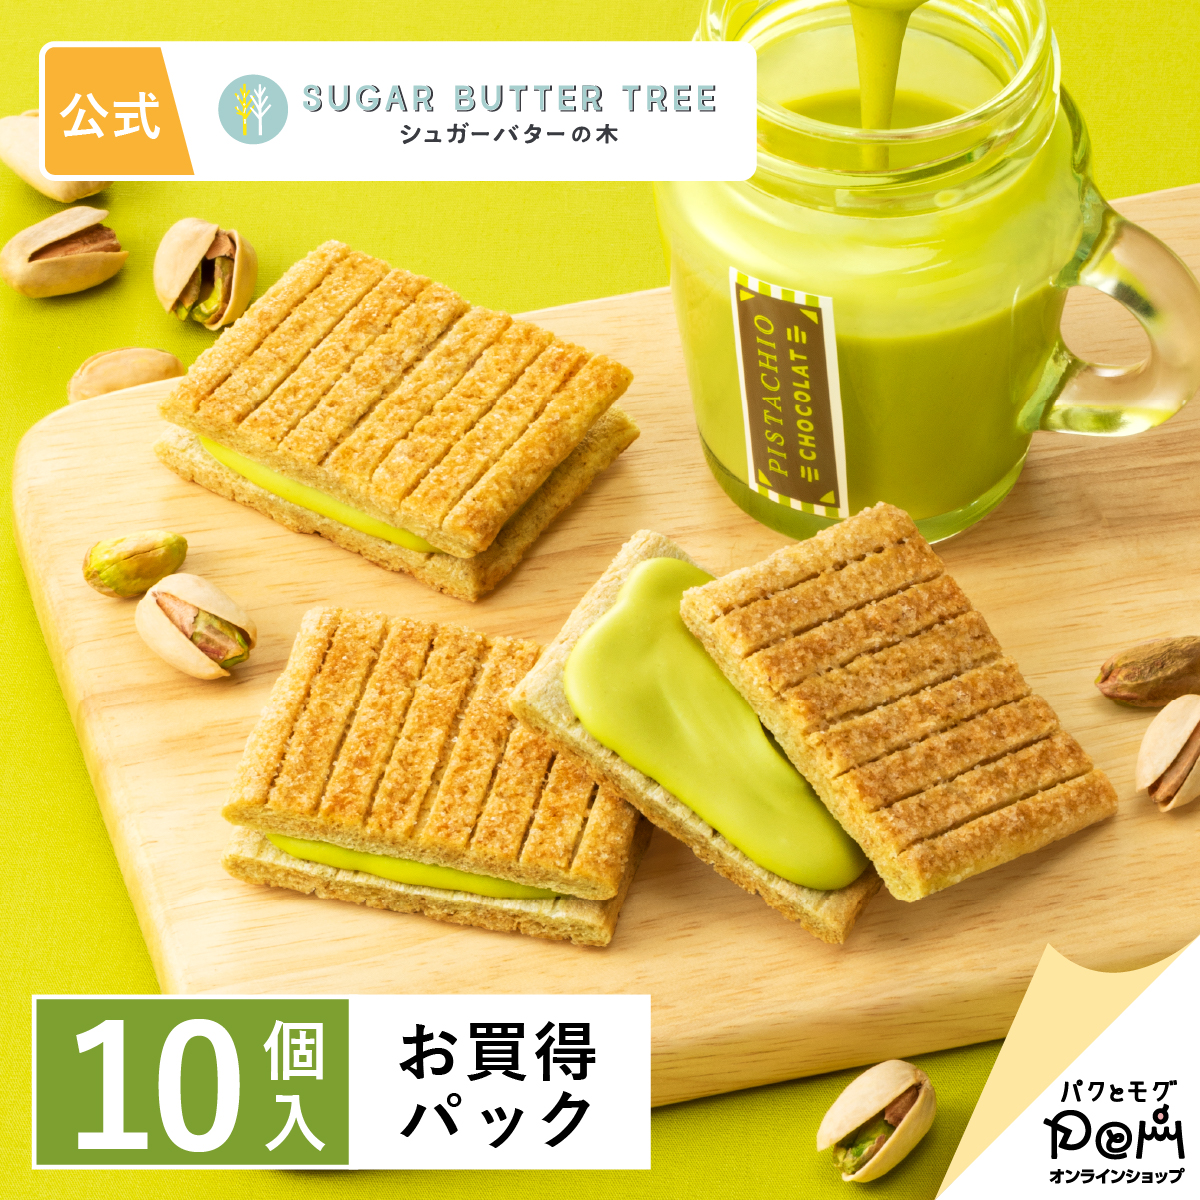 東京特產 砂糖奶油樹夾心餅 開心果 10個入(180g) Sugar Butter Tree 砂糖奶油樹 日本必買 | 日本樂天熱銷